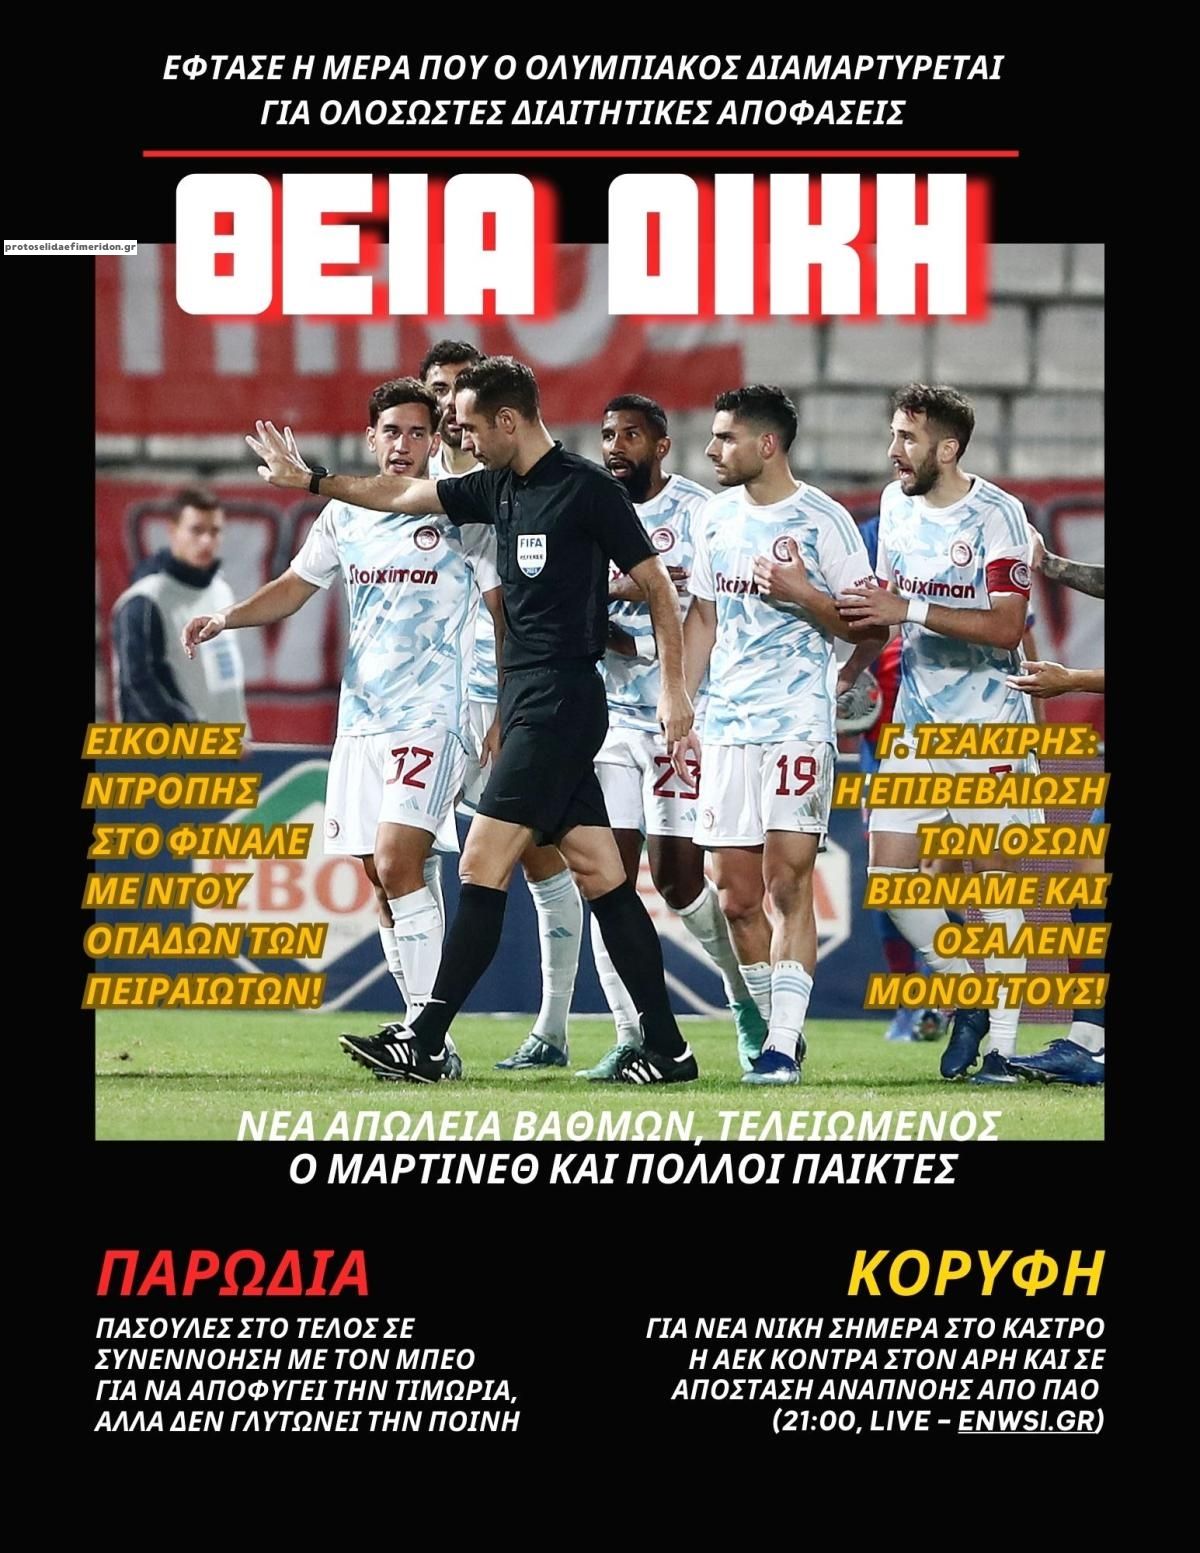 Πρωτοσέλιδο εφημερίδας enwsi.gr